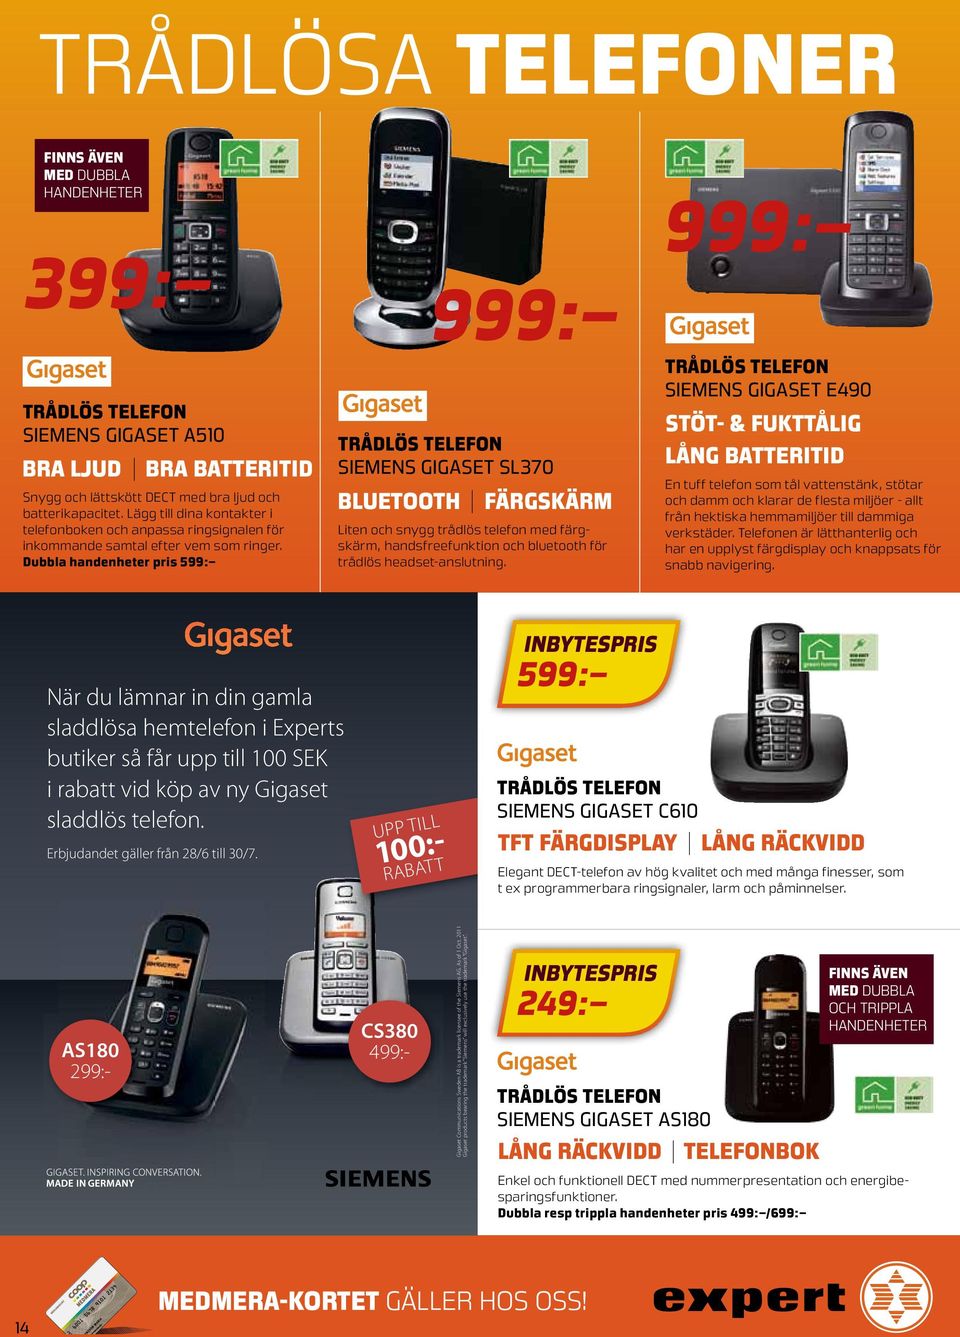 Dubbla handenheter pris 599: 999: trådlös telefon Siemens Gigaset SL370 bluetooth färgskärm Liten och snygg trådlös telefon med färgskärm, handsfreefunktion och bluetooth för trådlös